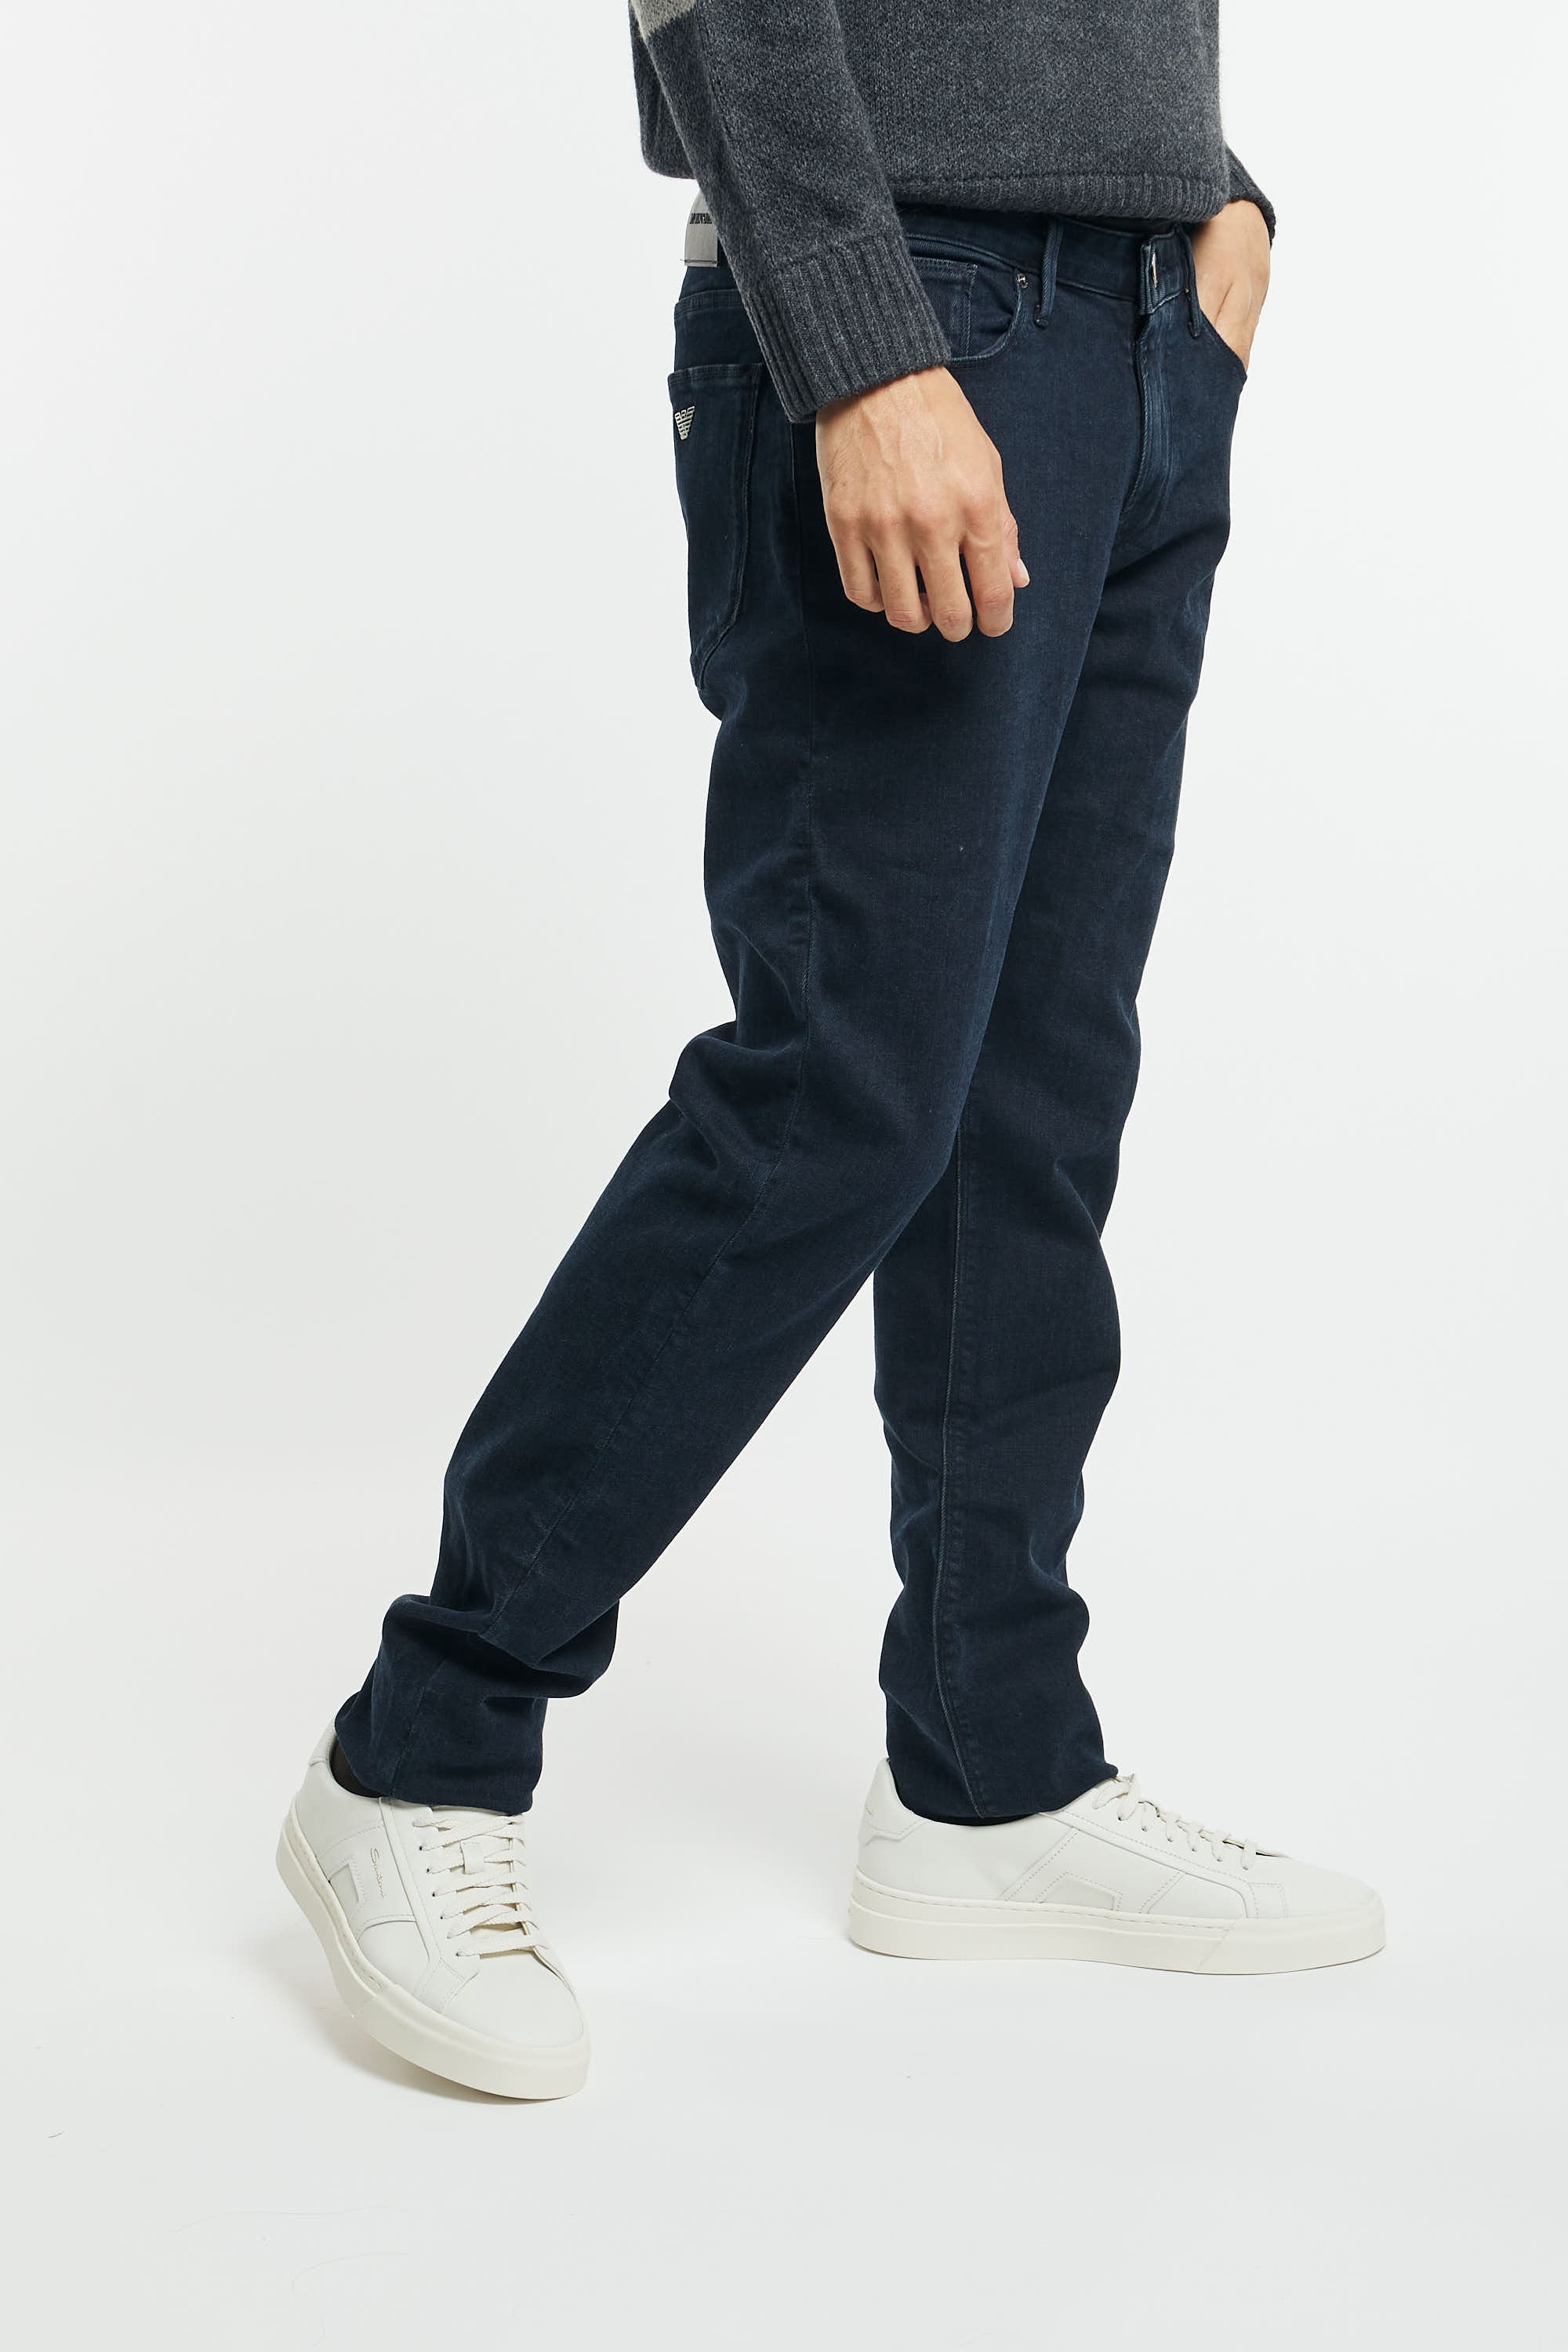 Jeans J06 slim fit in twill comfort denim-3